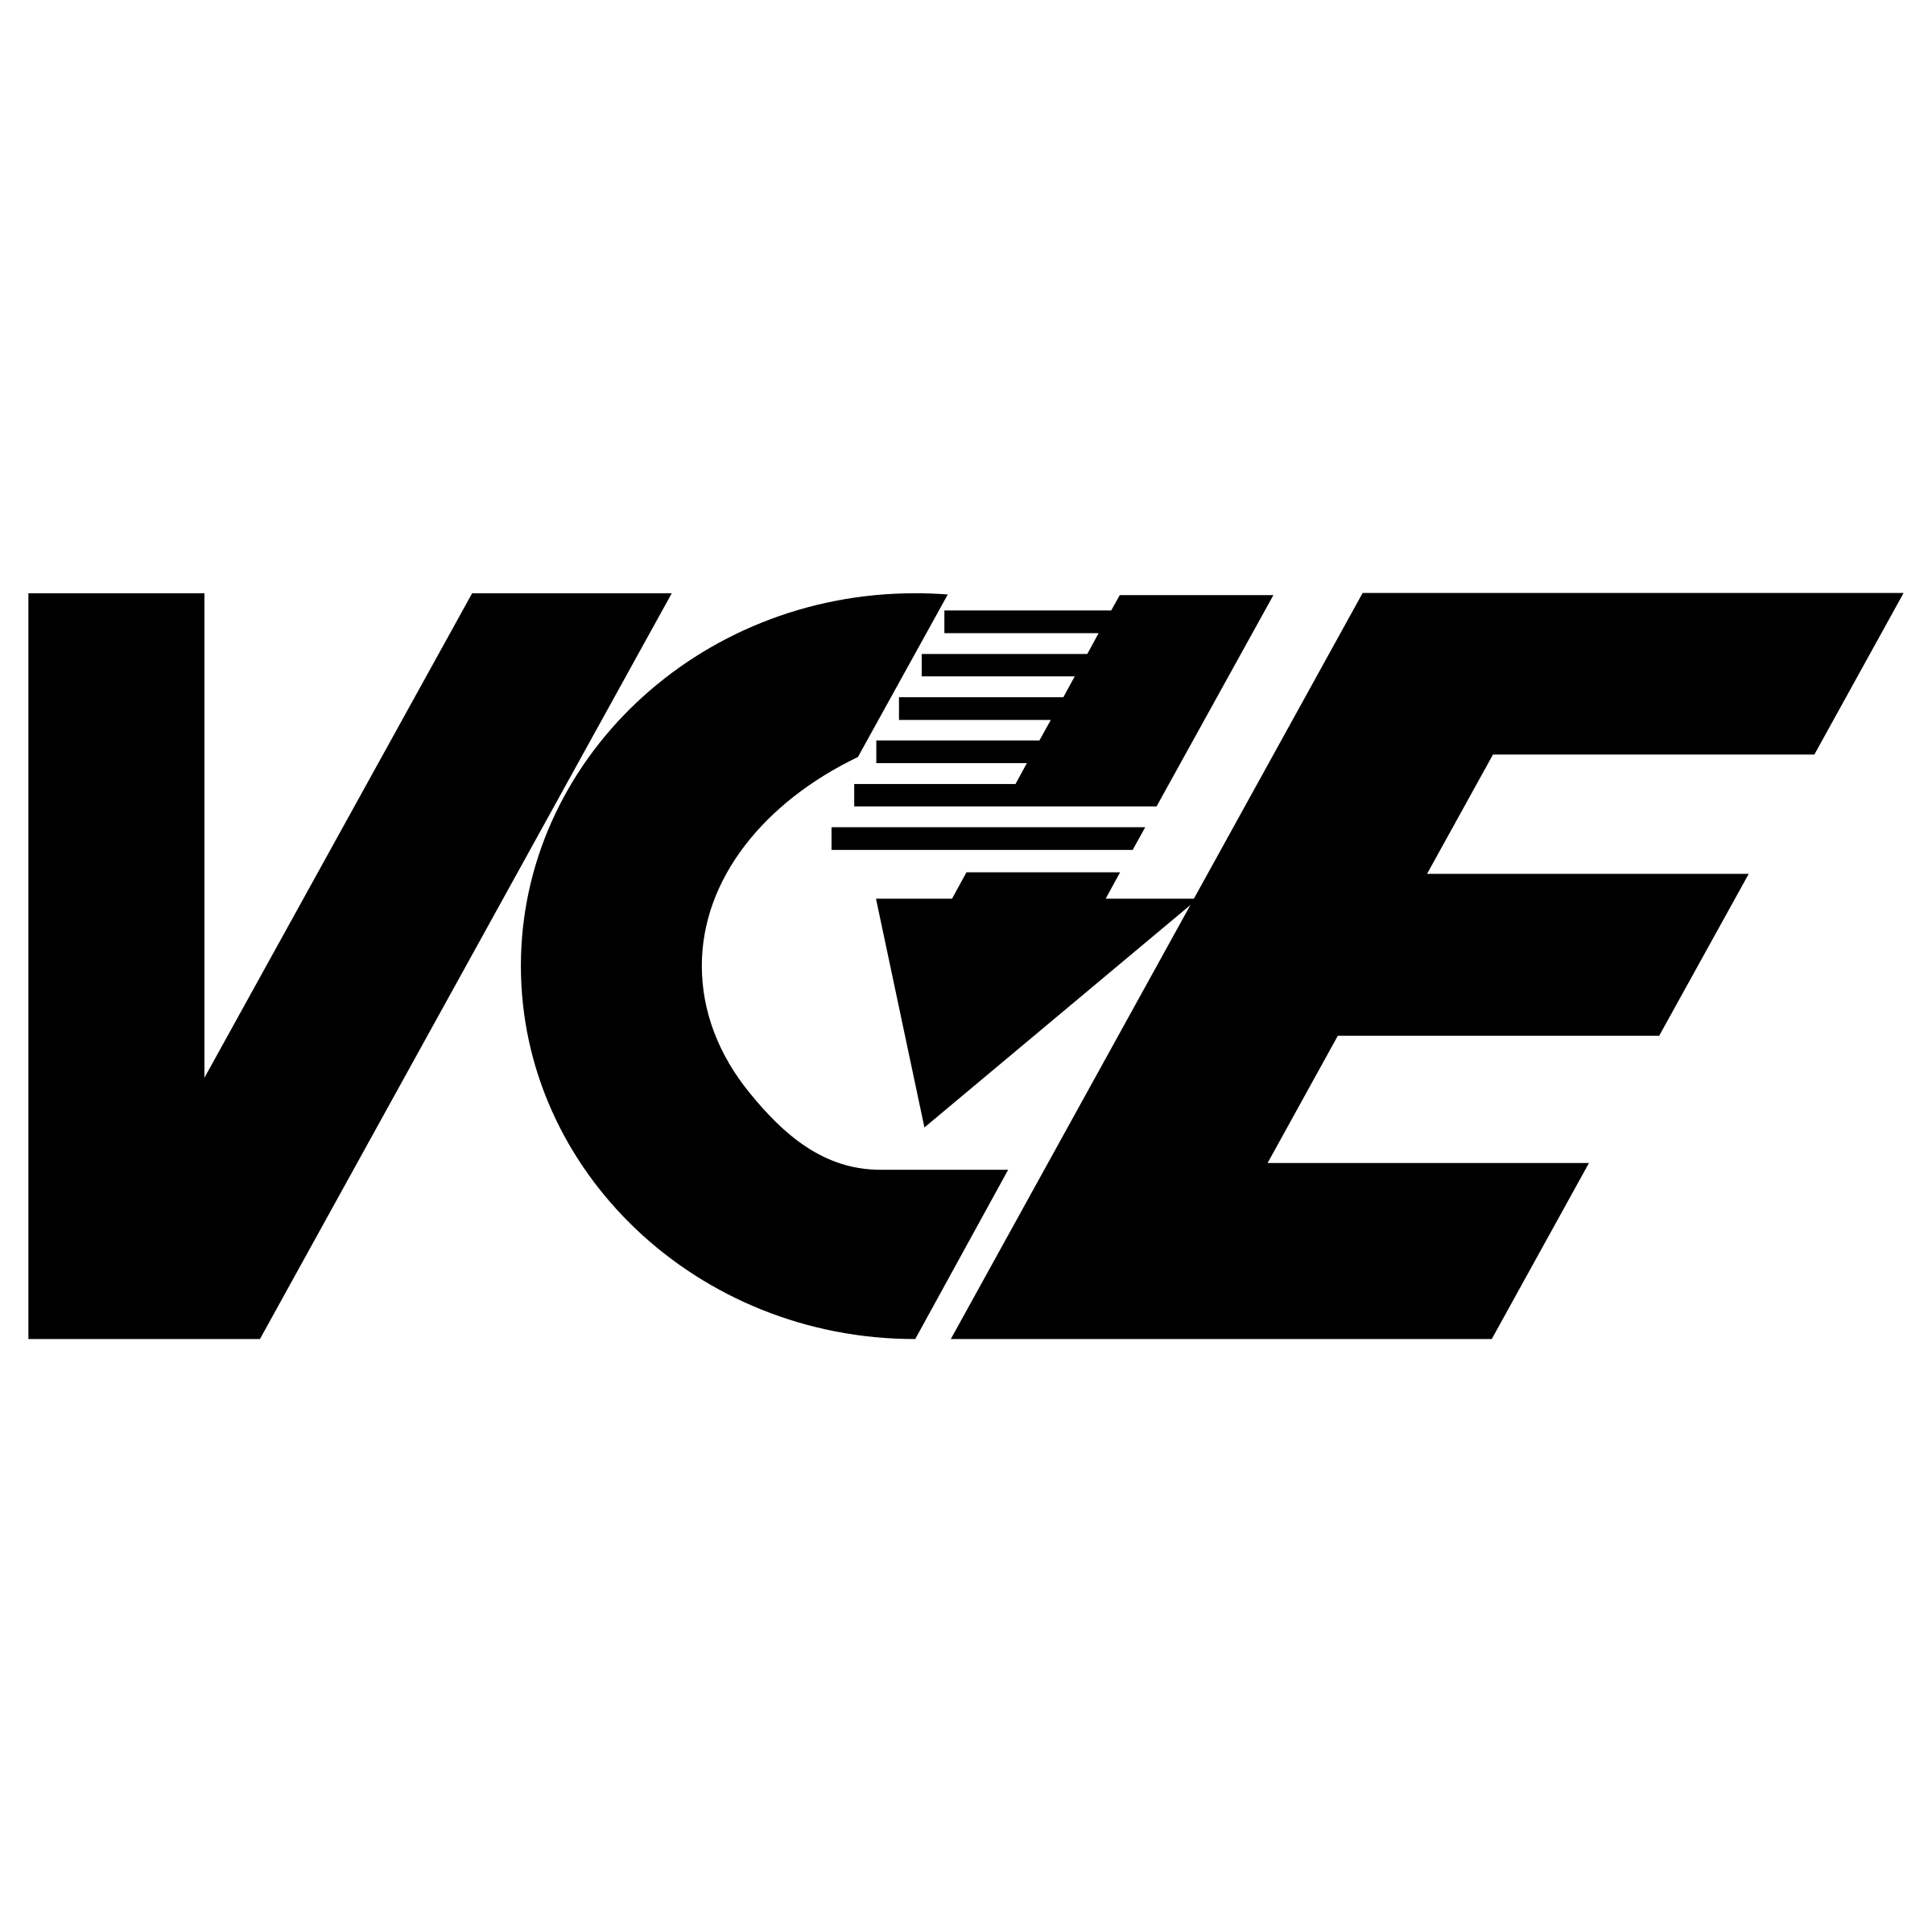 VCE Logo - VCE Logo PNG Transparent & SVG Vector - Freebie Supply